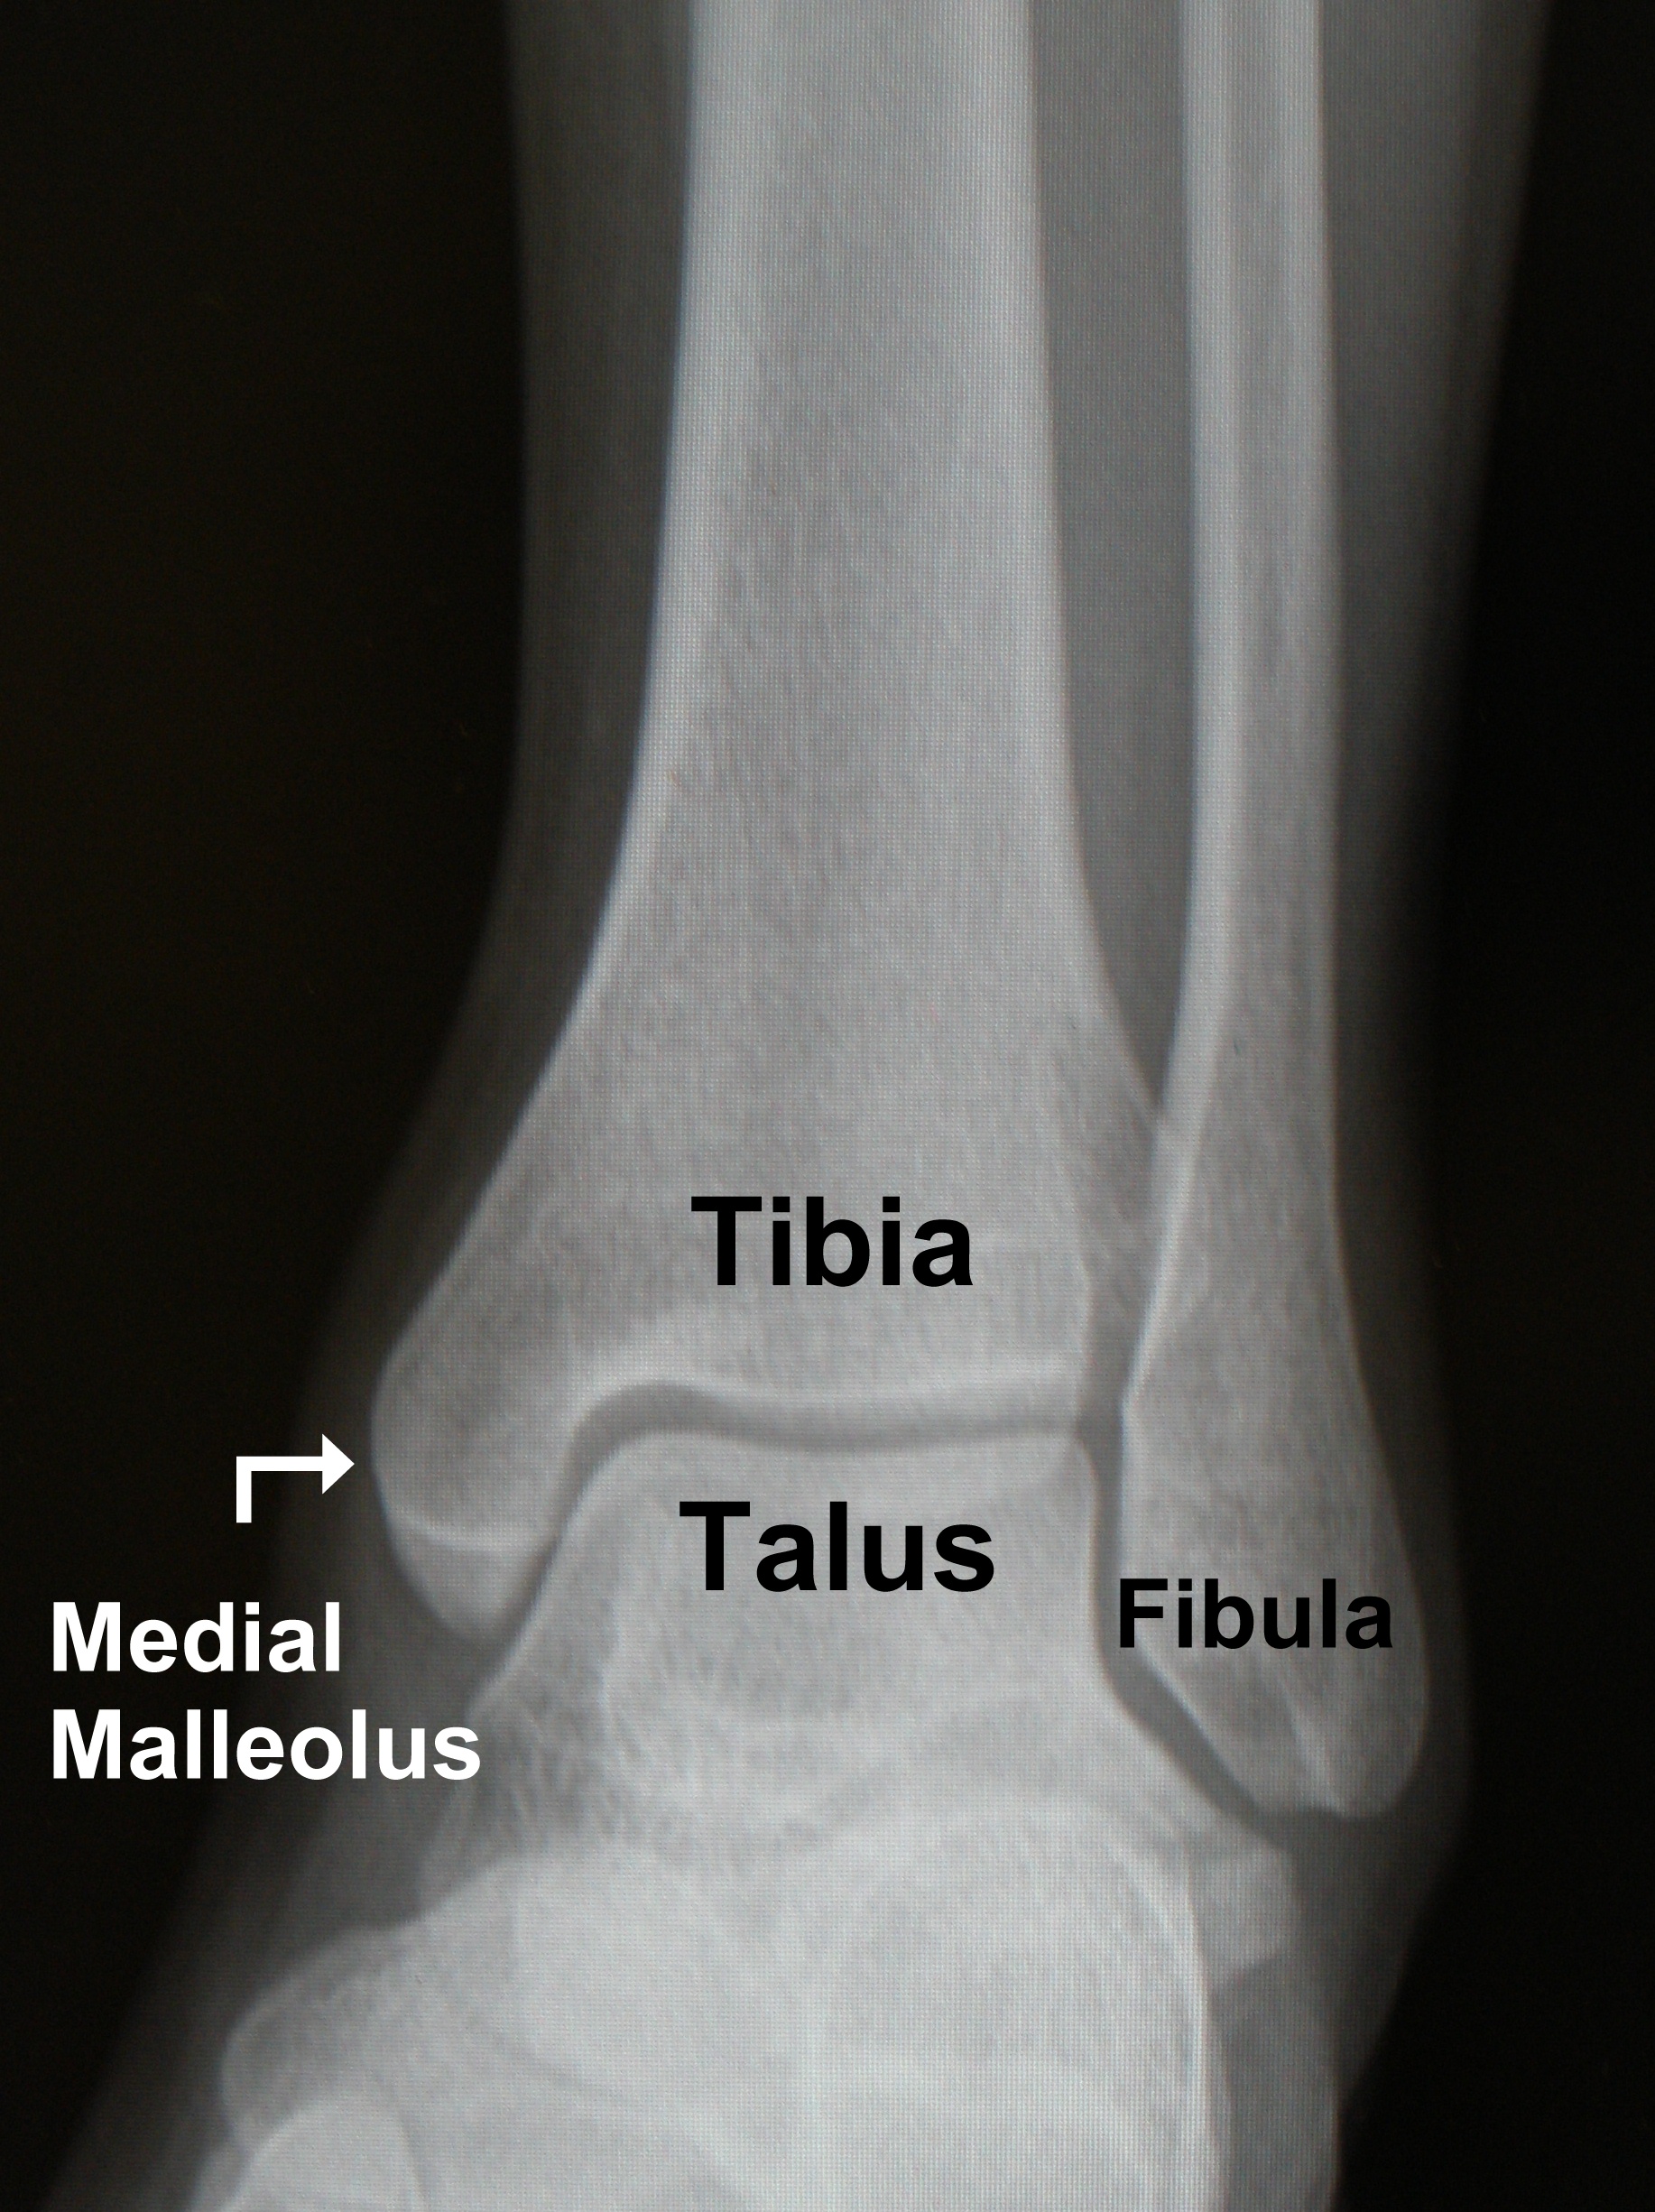 medial malleolus of tibia